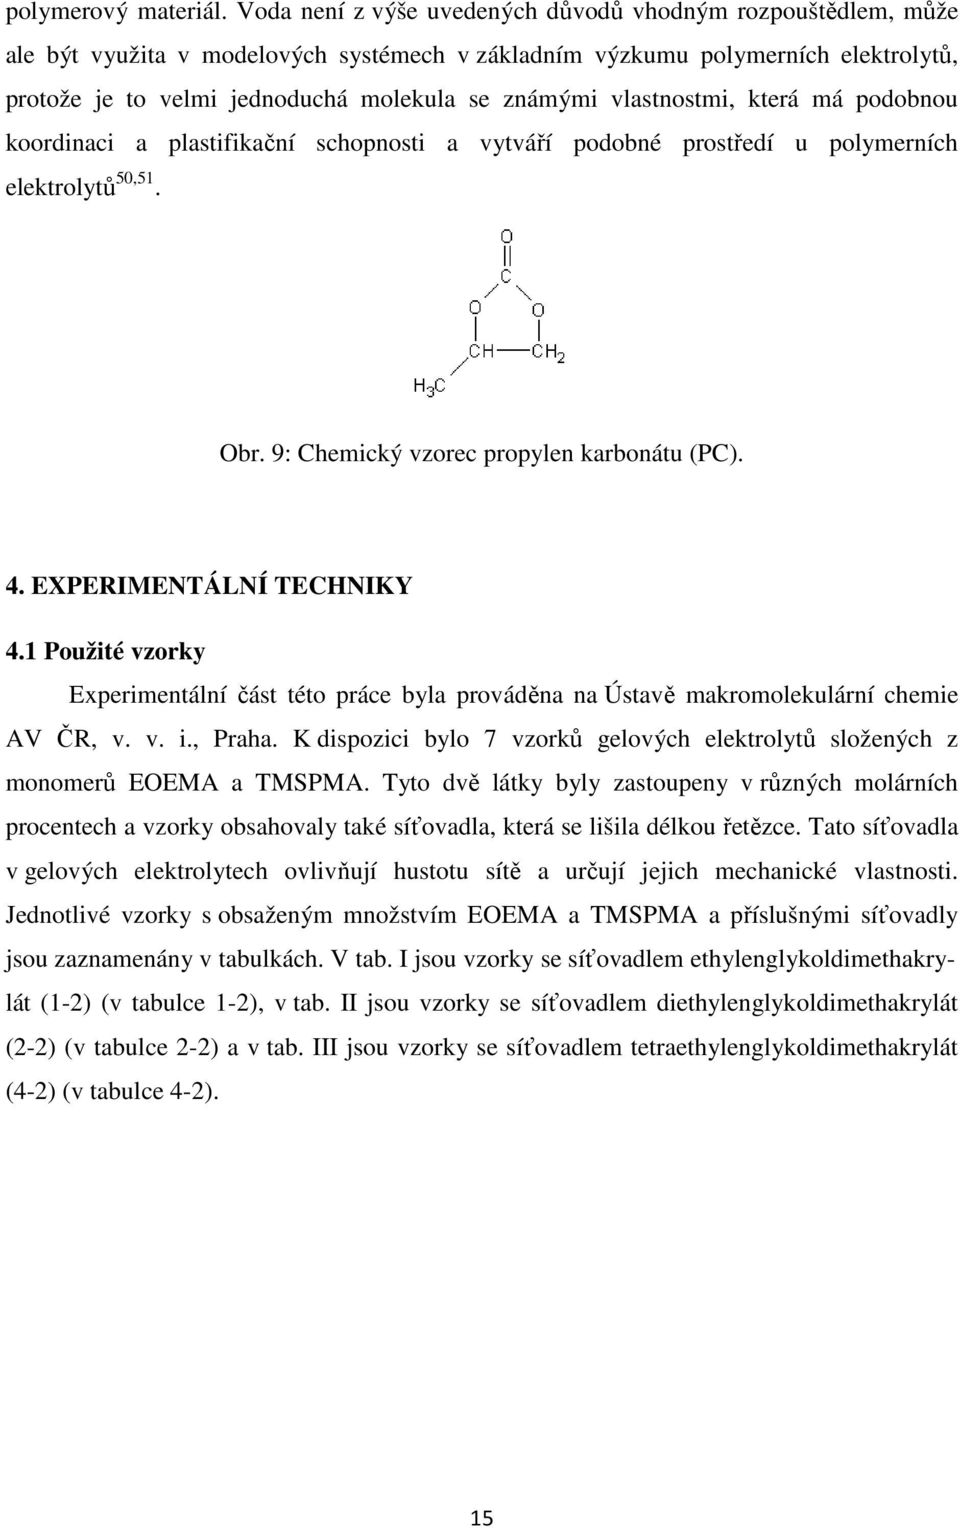 vlastnostmi, která má podobnou koordinaci a plastifikační schopnosti a vytváří podobné prostředí u polymerních elektrolytů 50,51. Obr. 9: Chemický vzorec propylen karbonátu (PC). 4.